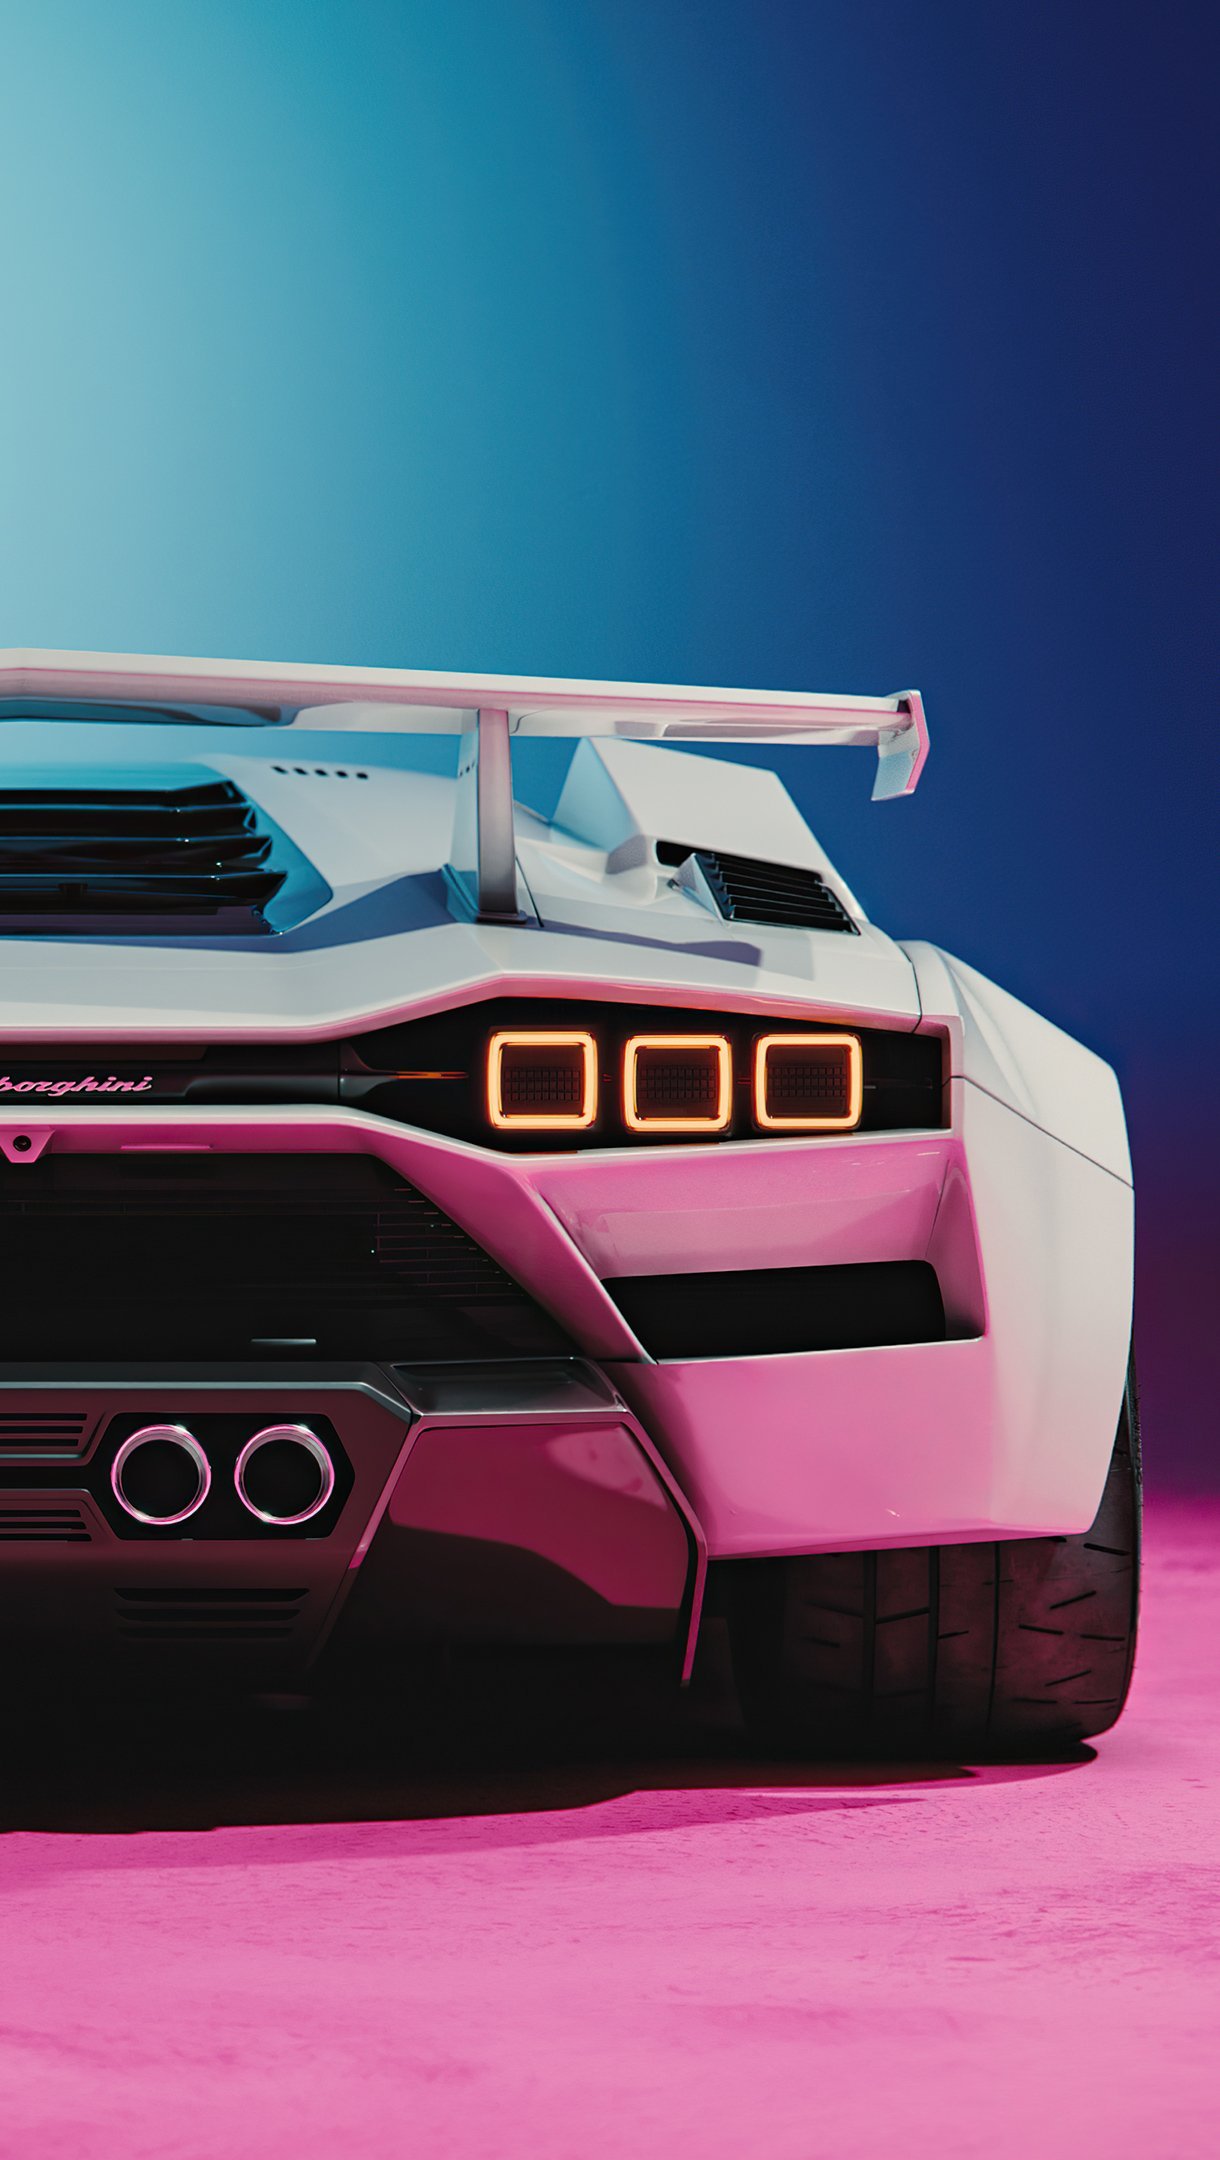 Fondos de pantalla Lamborghini Countach concept de atrás Vertical